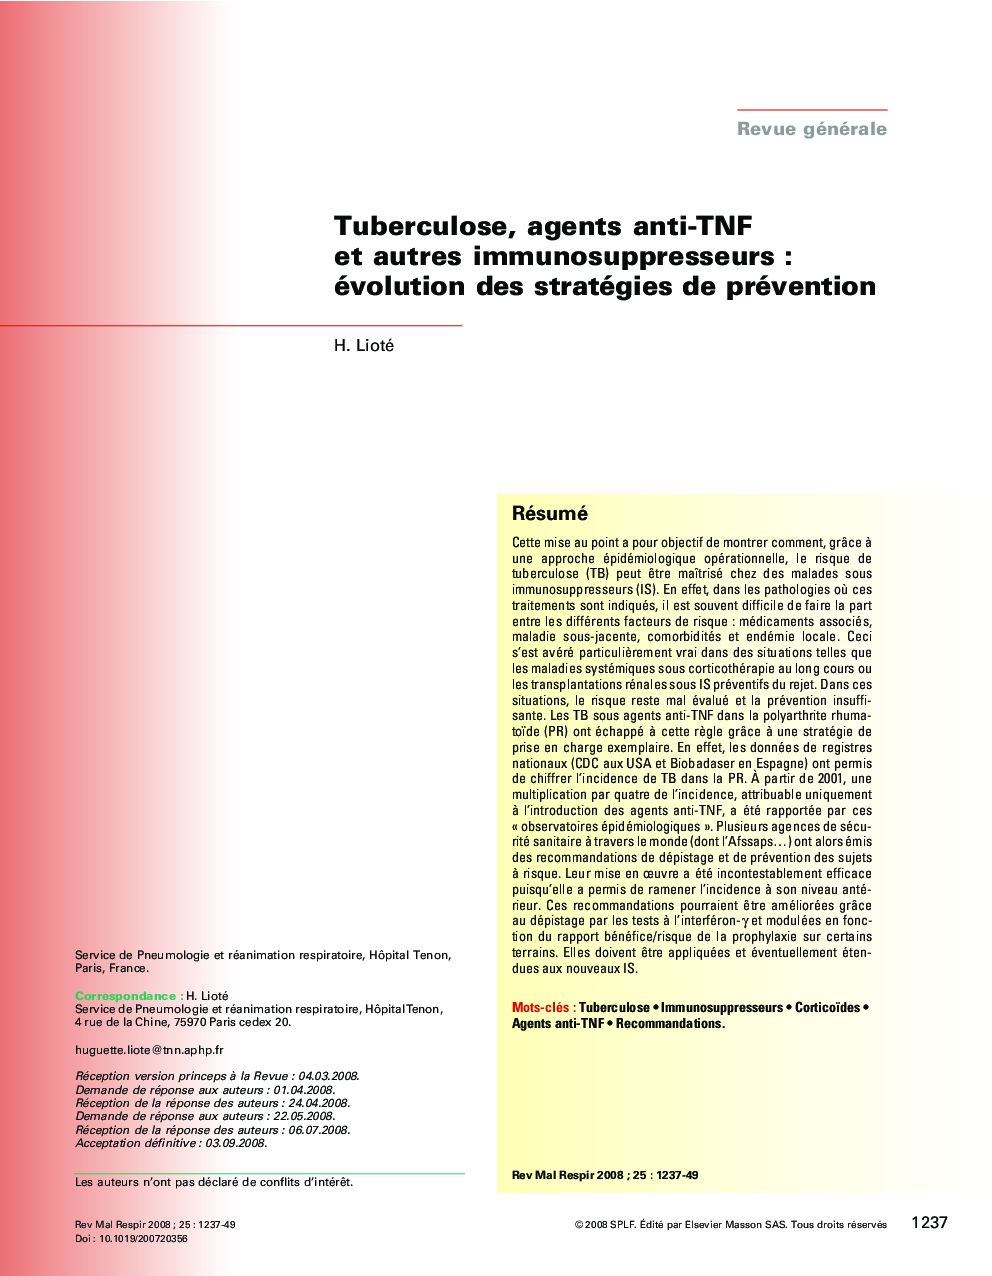 Tuberculose, agents anti-TNF et autres immunosuppresseursÂ : évolution des stratégies de prévention